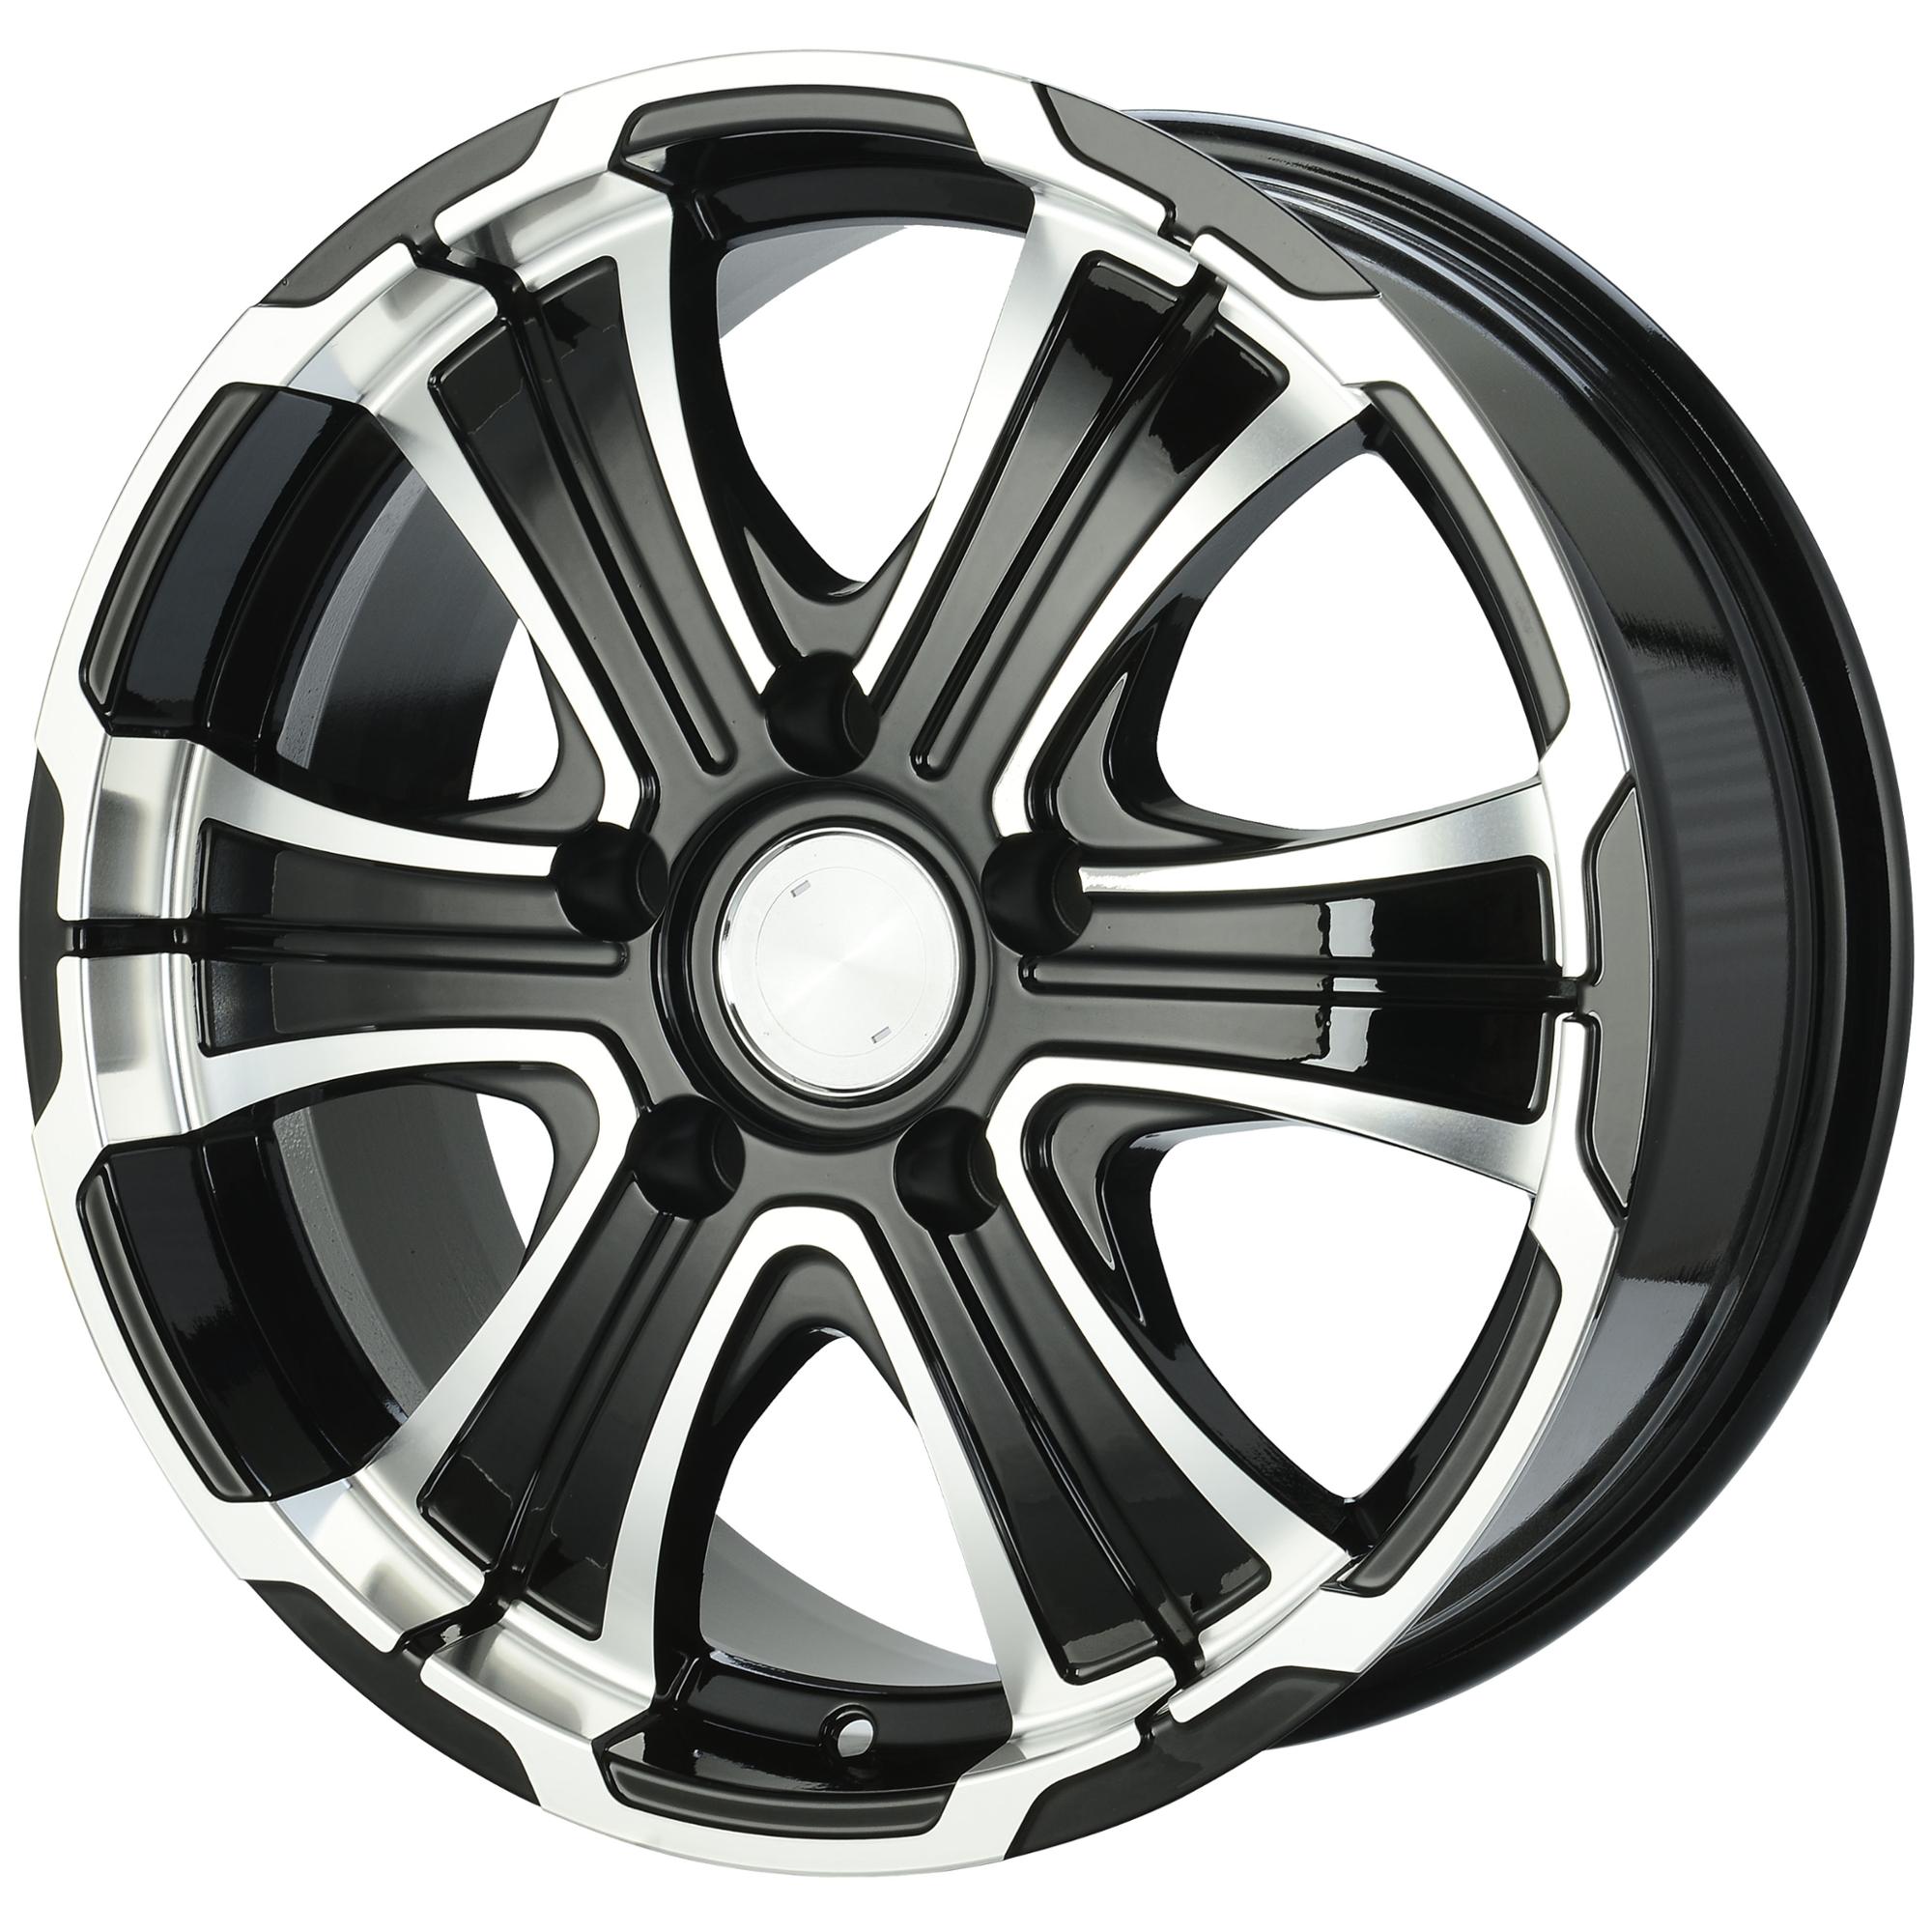 2018 hot sell aluminum alloy wheel hub, germany alloy wheel